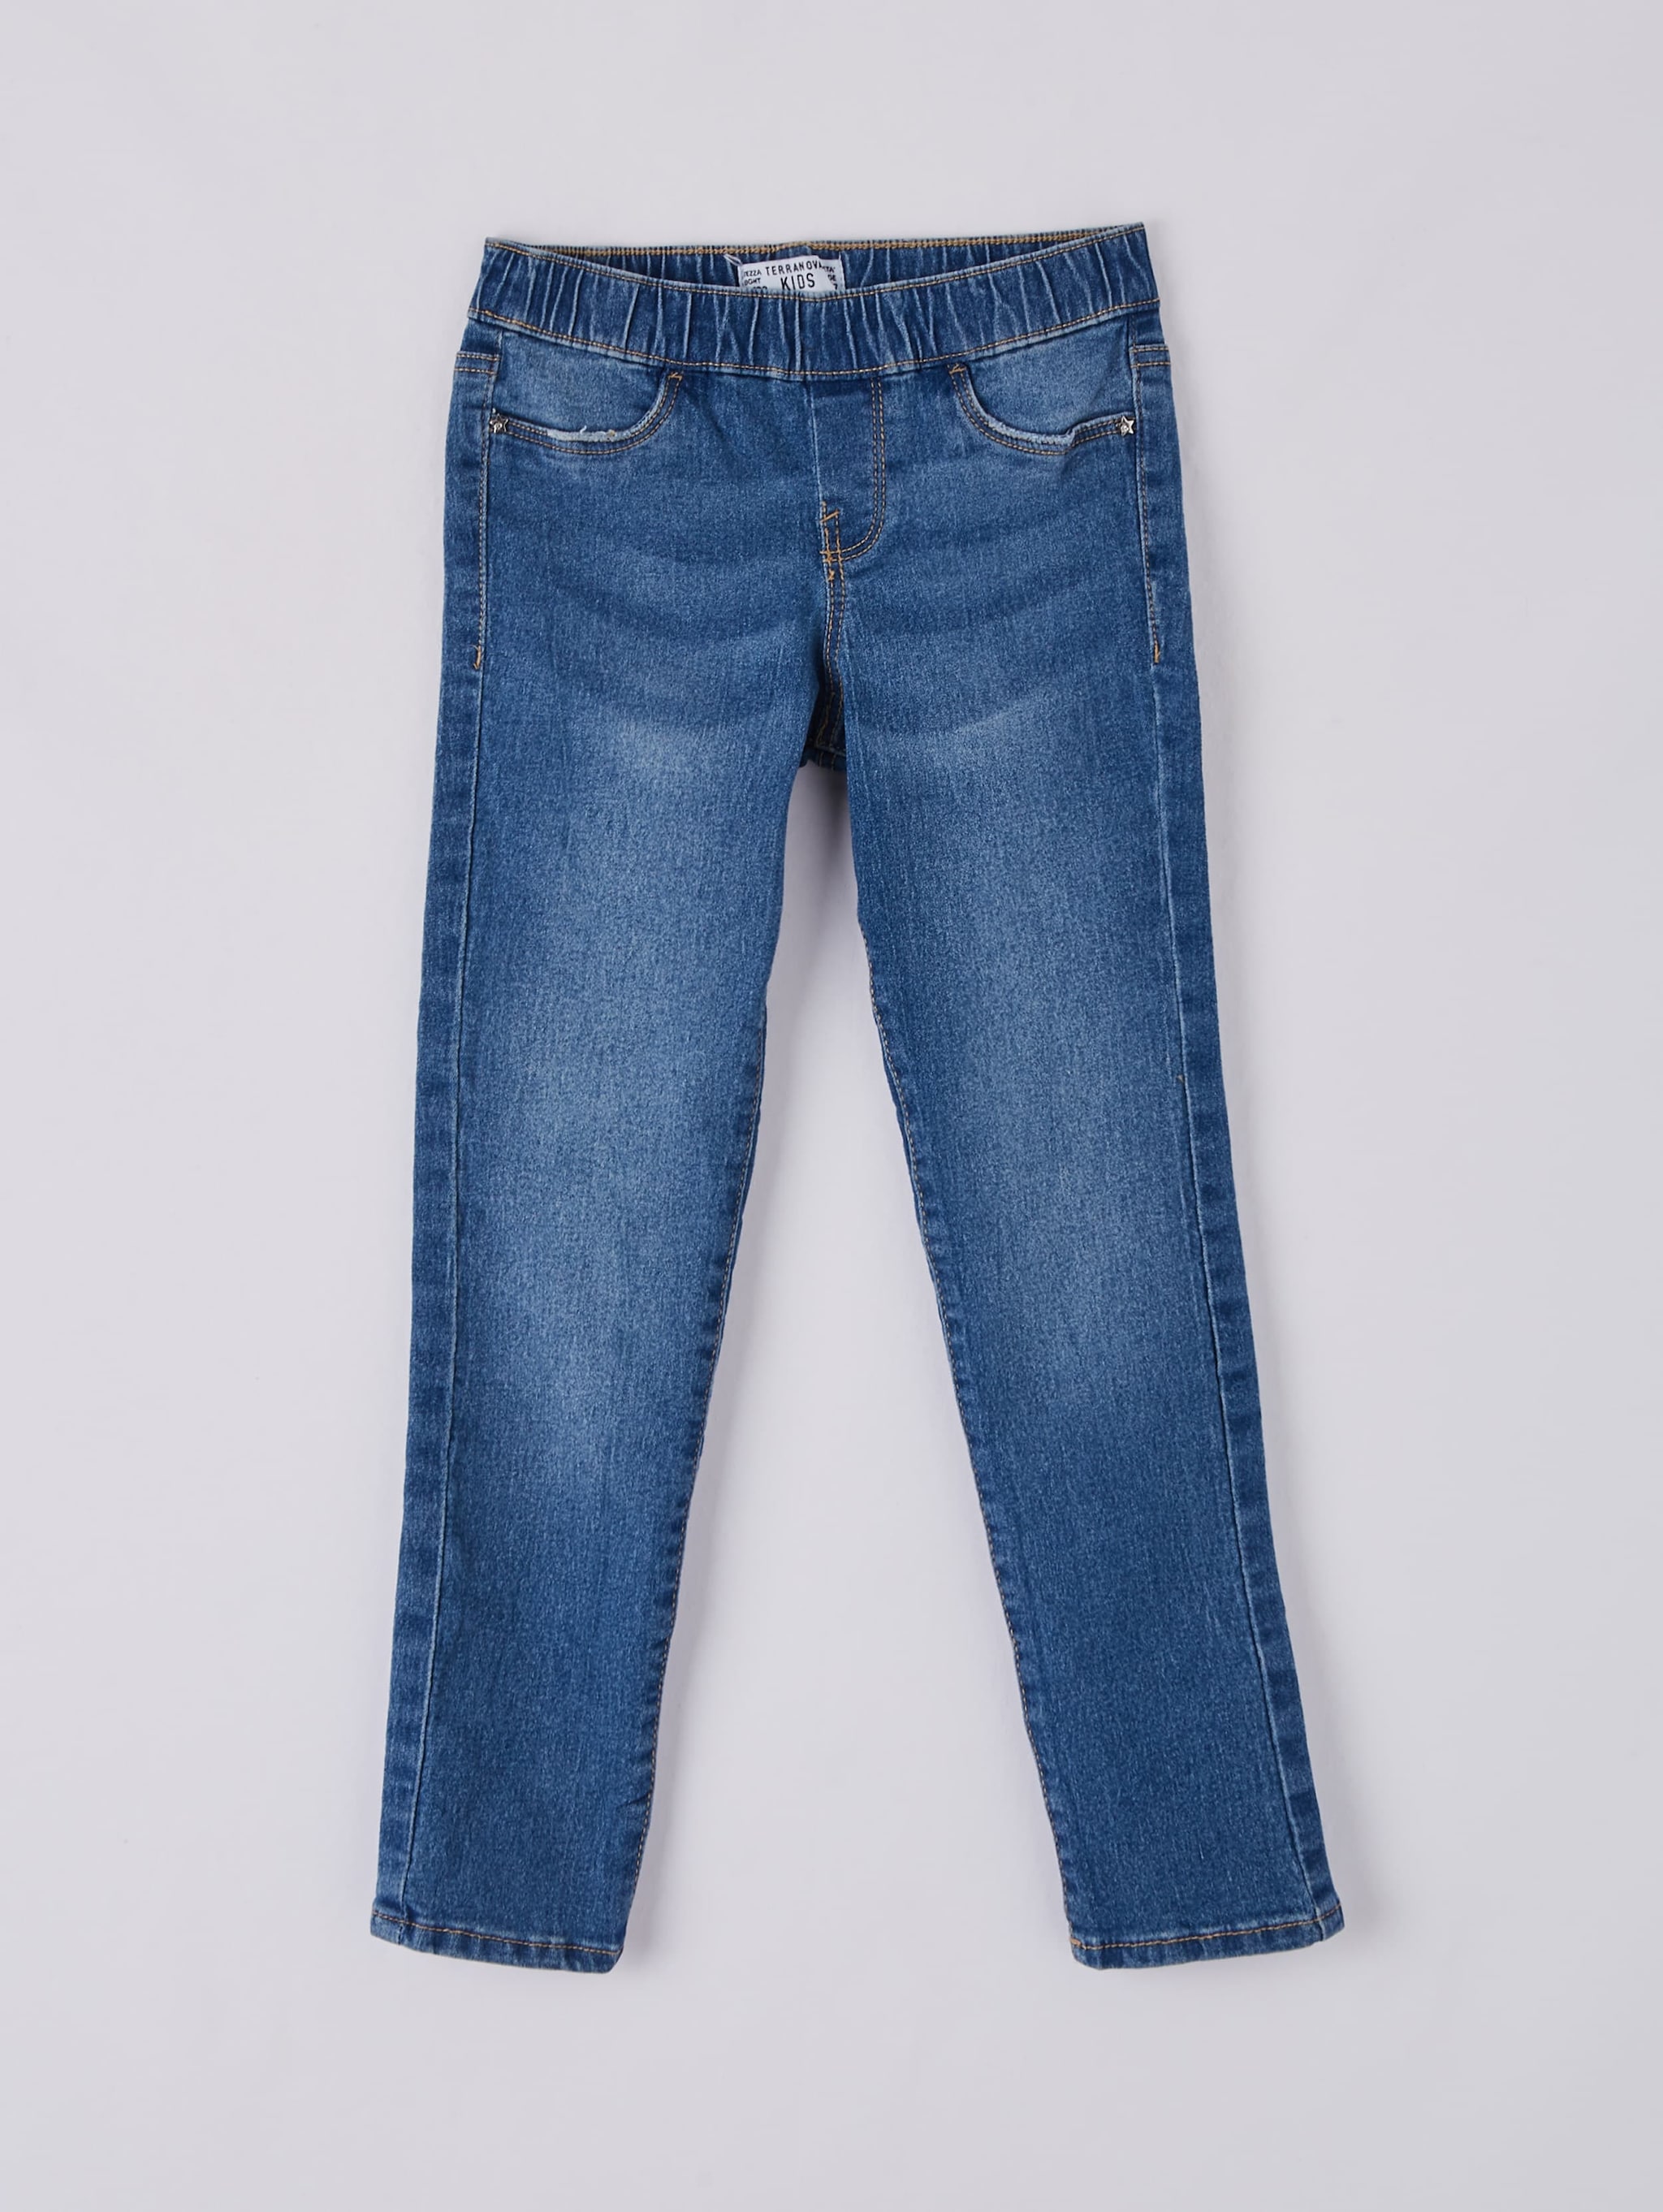 selfridges paige jeans